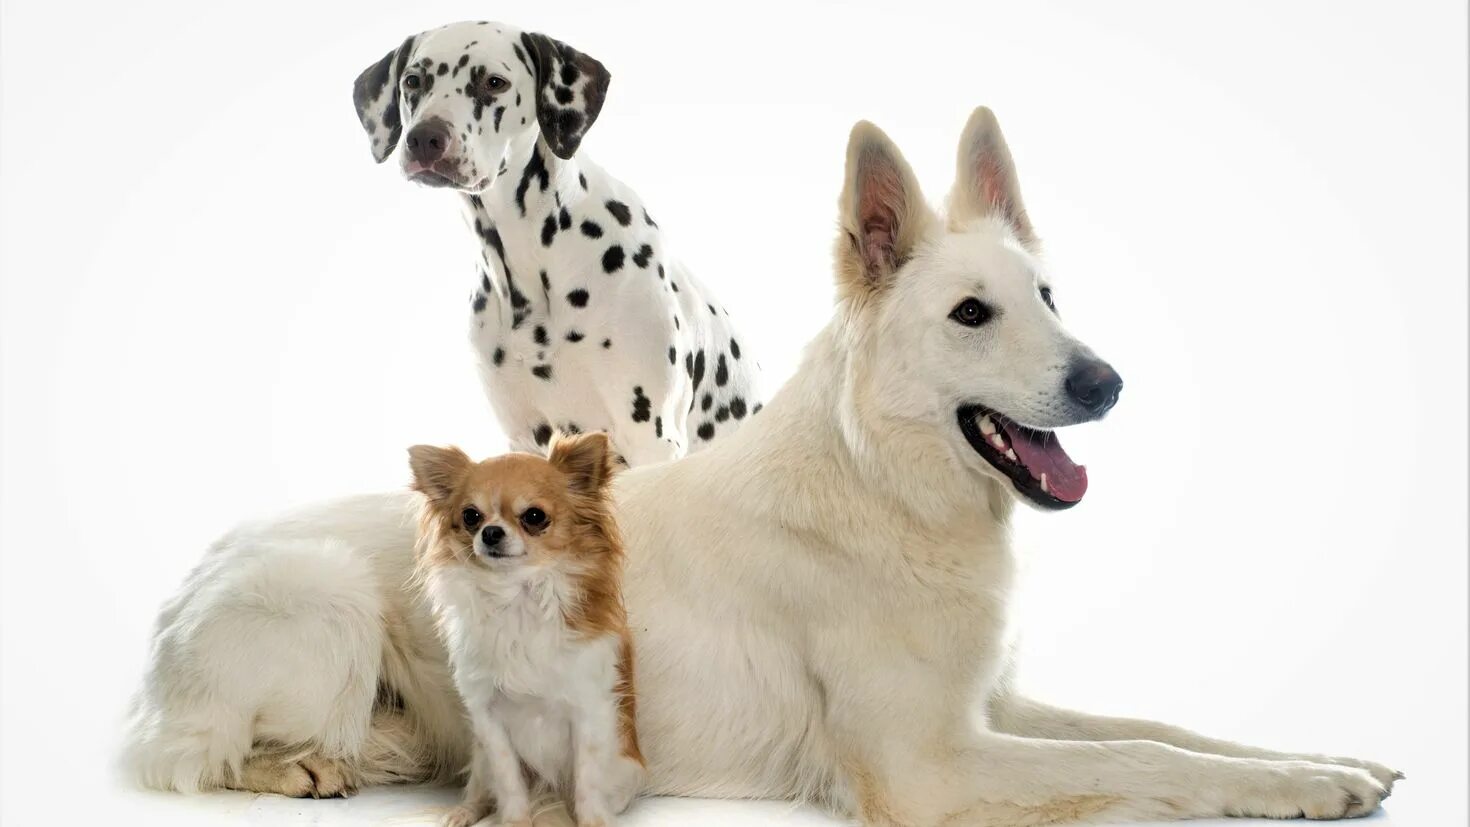 3 animals dogs. Далматин и чихуахуа. Далматинец и овчарка. Овчарок и далматинов. Чихуахуа далматинец.